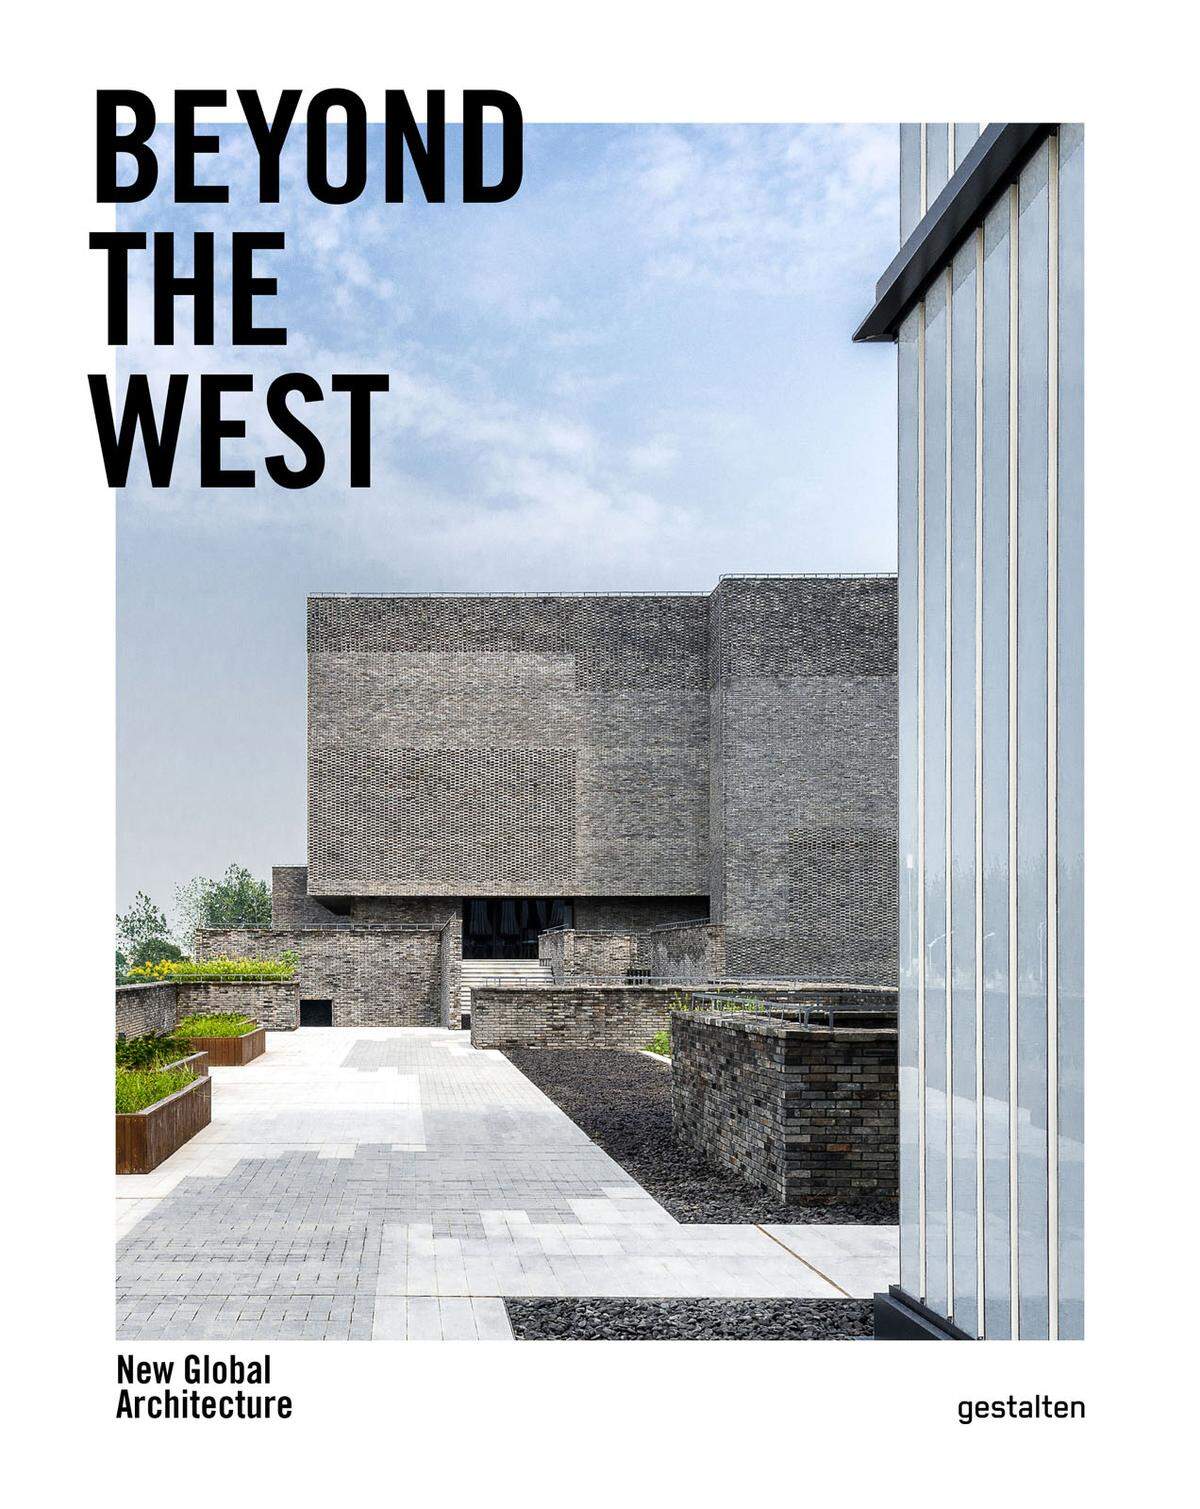 Diese und weitere innovative Projekte von Architekten in Asien, Afrika oder Amerika zeigt "Beyond the West". Es erscheint am 12. Mai im Gestalten Verlag. >> Weitere Informationen